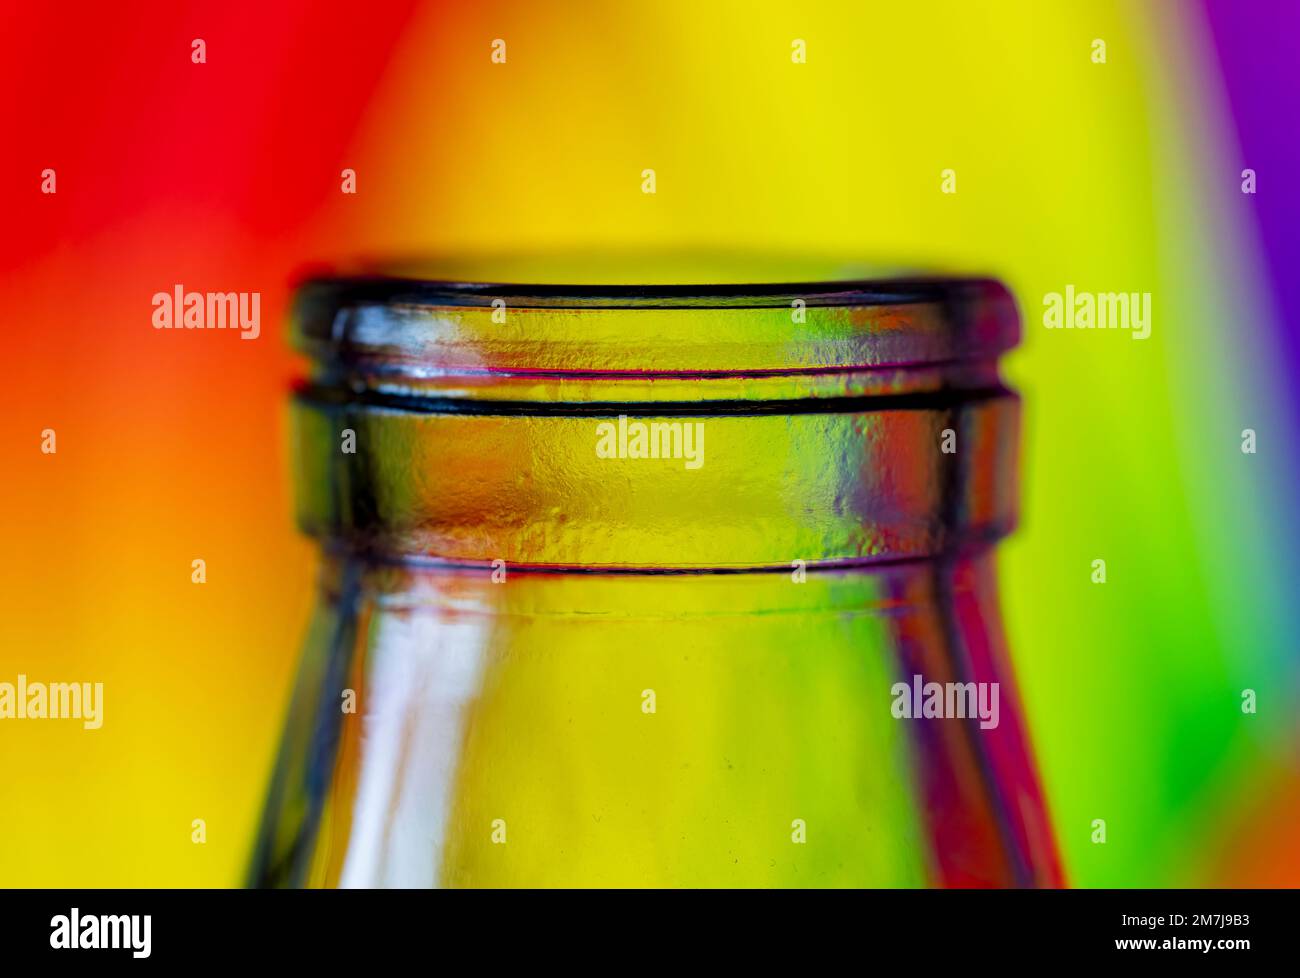 Nahaufnahme der Oberseite einer Glasflasche, fotografiert vor einem mehrfarbigen Hintergrund Stockfoto